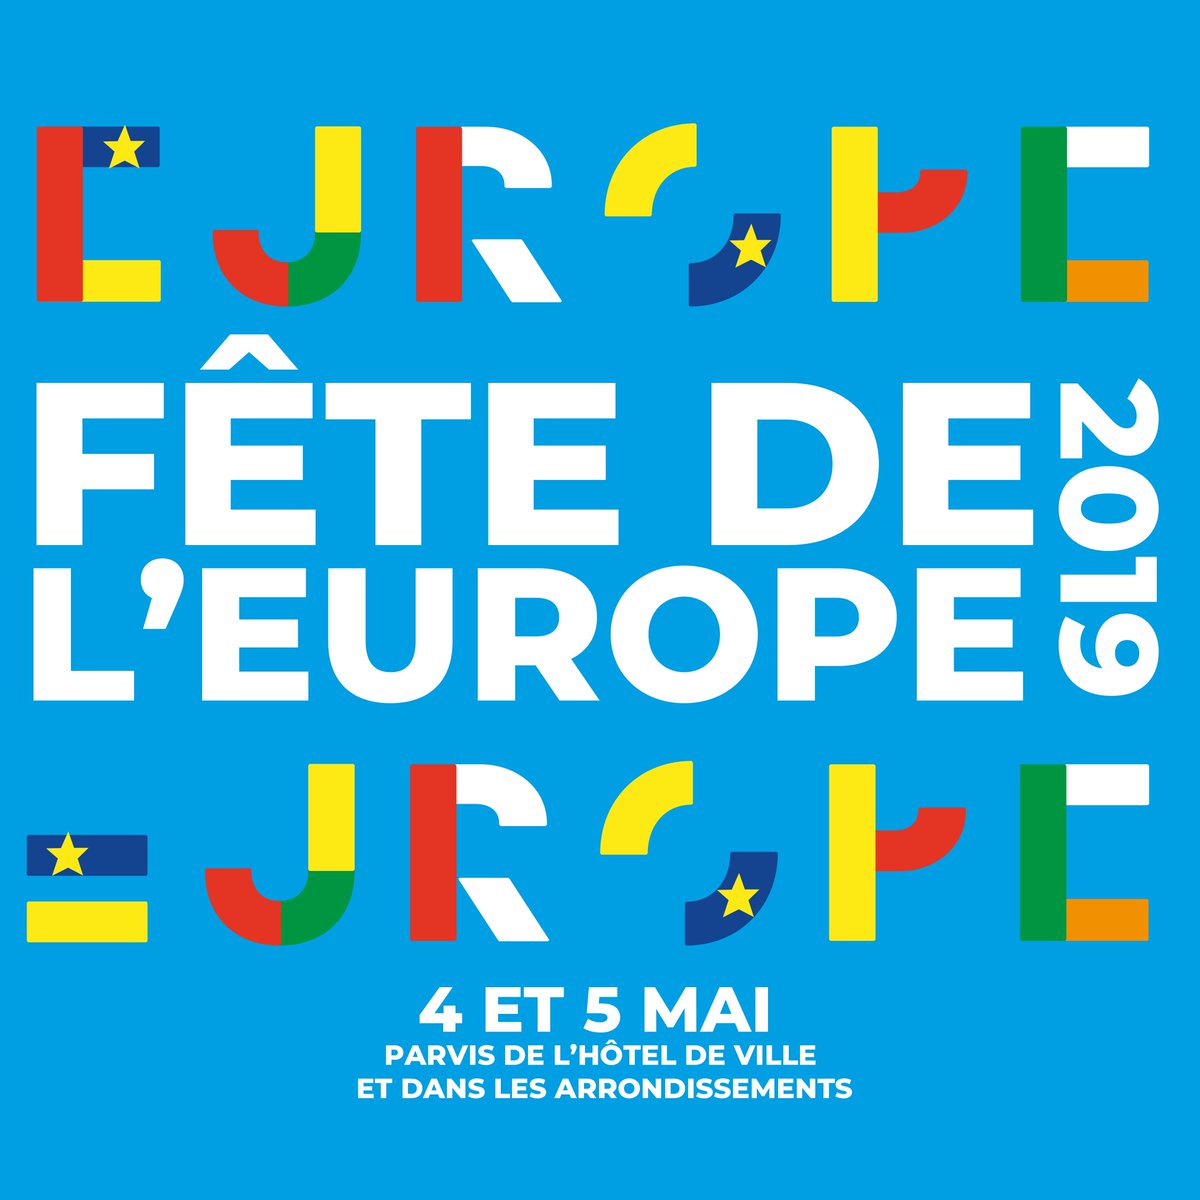 Tout le weekend, venez fêter l'Europe 🇪🇺 sur le parvis de l'Hôtel de ville de @Paris ! Au programme : concerts gratuits, food trucks, débats, animations... Venez nombreux 😀 ! → facebook.com/events/6461820… #FeteDeLeurope